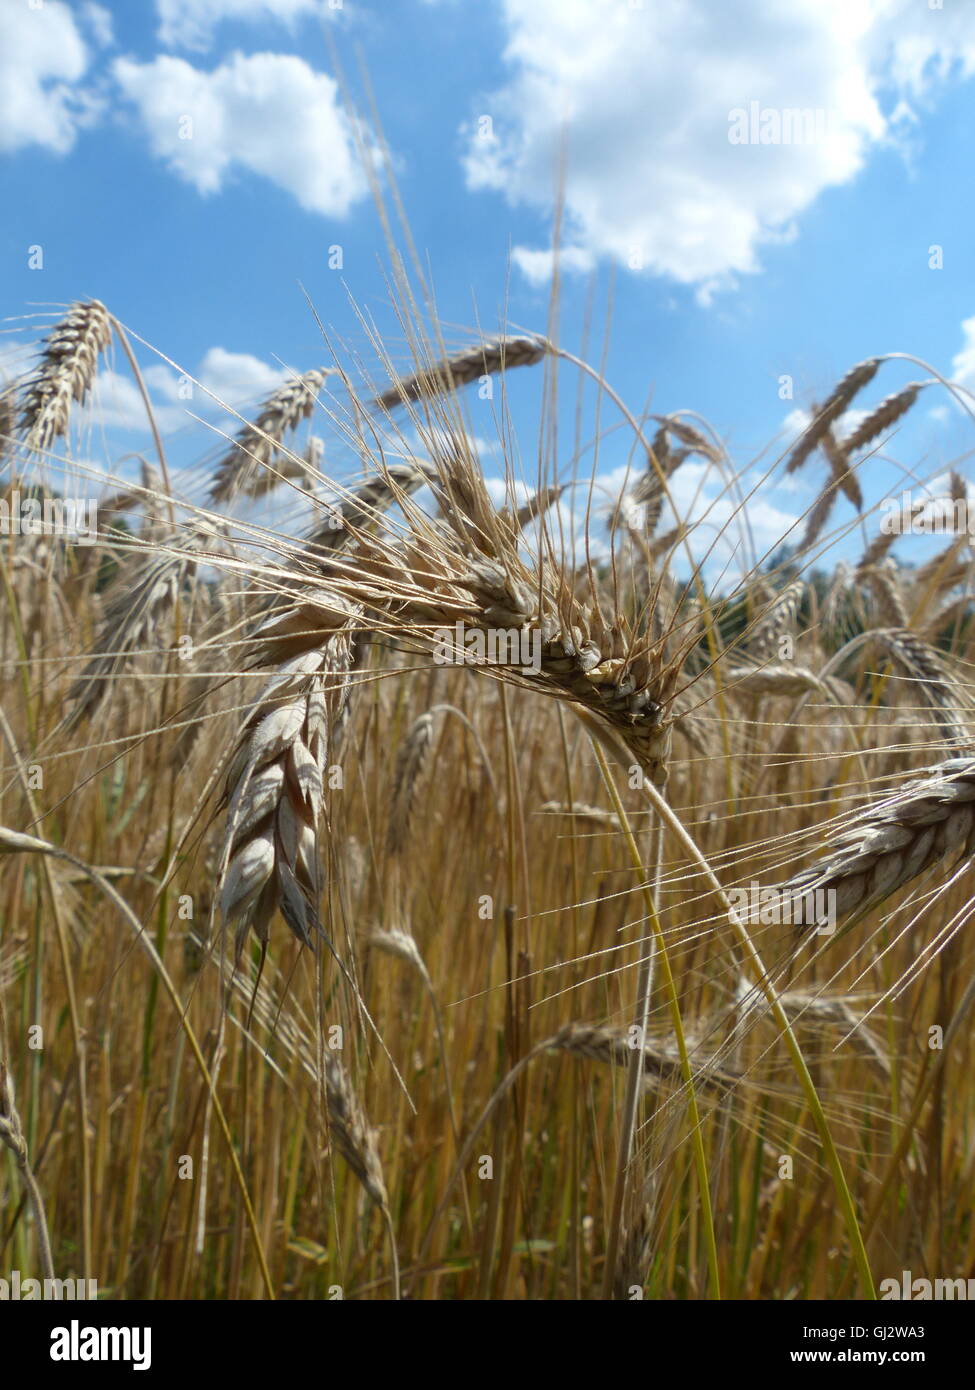 L'agriculture, champ de blé prêt pour la récolte Banque D'Images